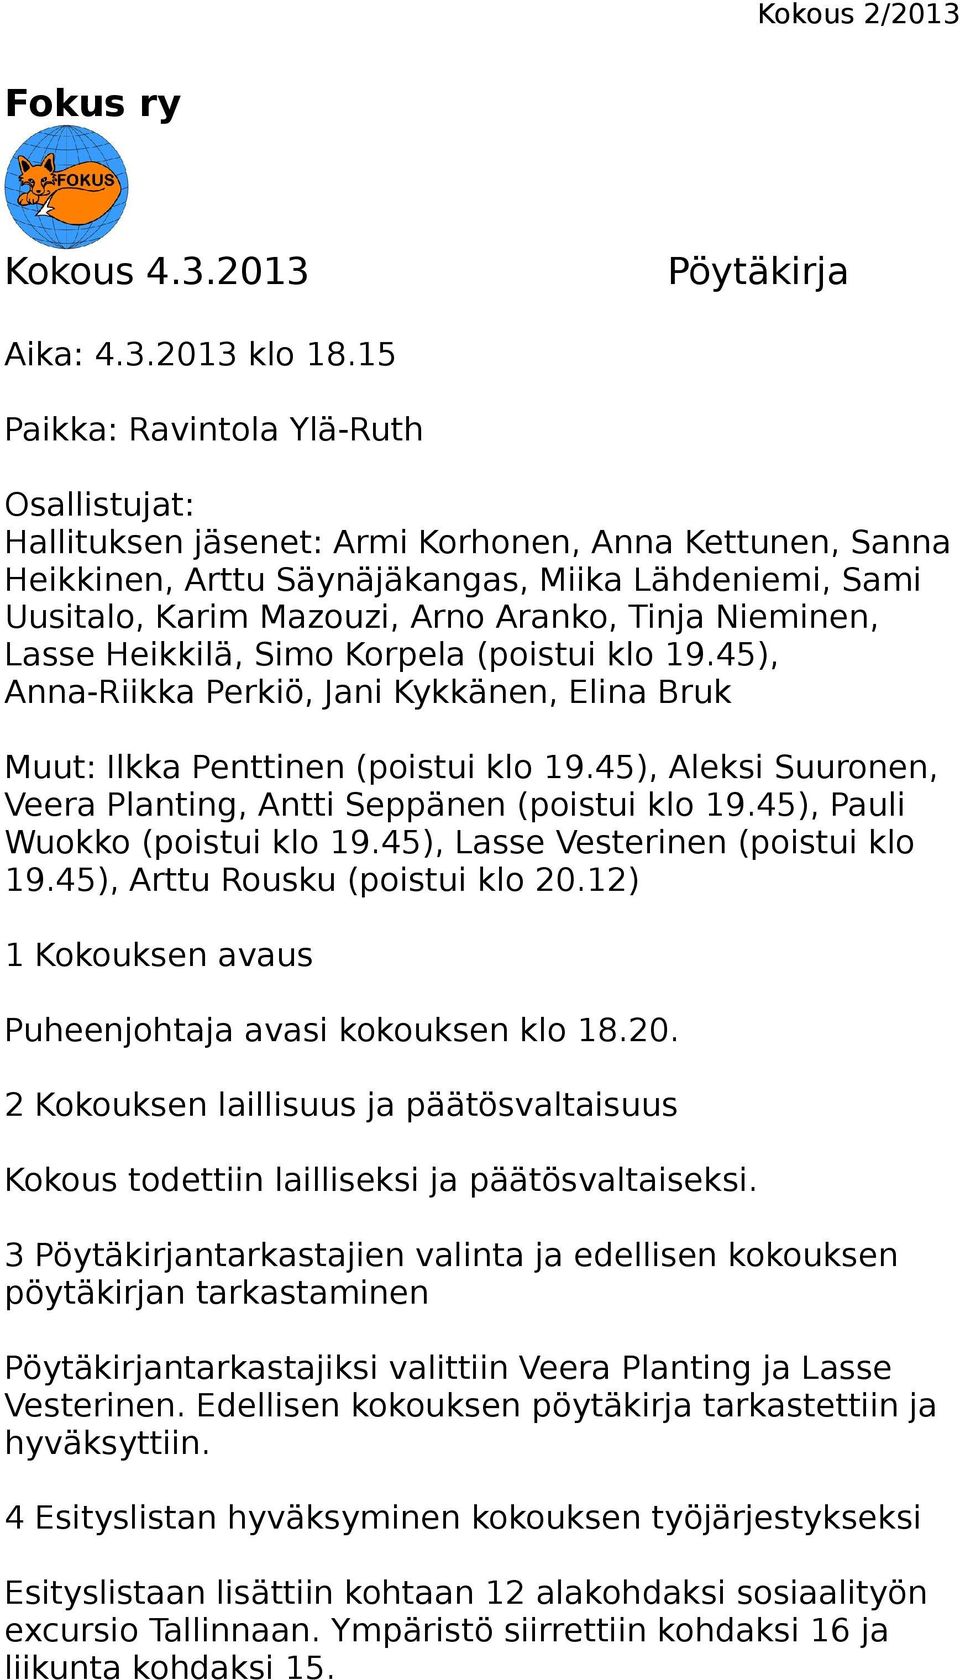 Nieminen, Lasse Heikkilä, Simo Korpela (poistui klo 19.45), Anna-Riikka Perkiö, Jani Kykkänen, Elina Bruk Muut: Ilkka Penttinen (poistui klo 19.